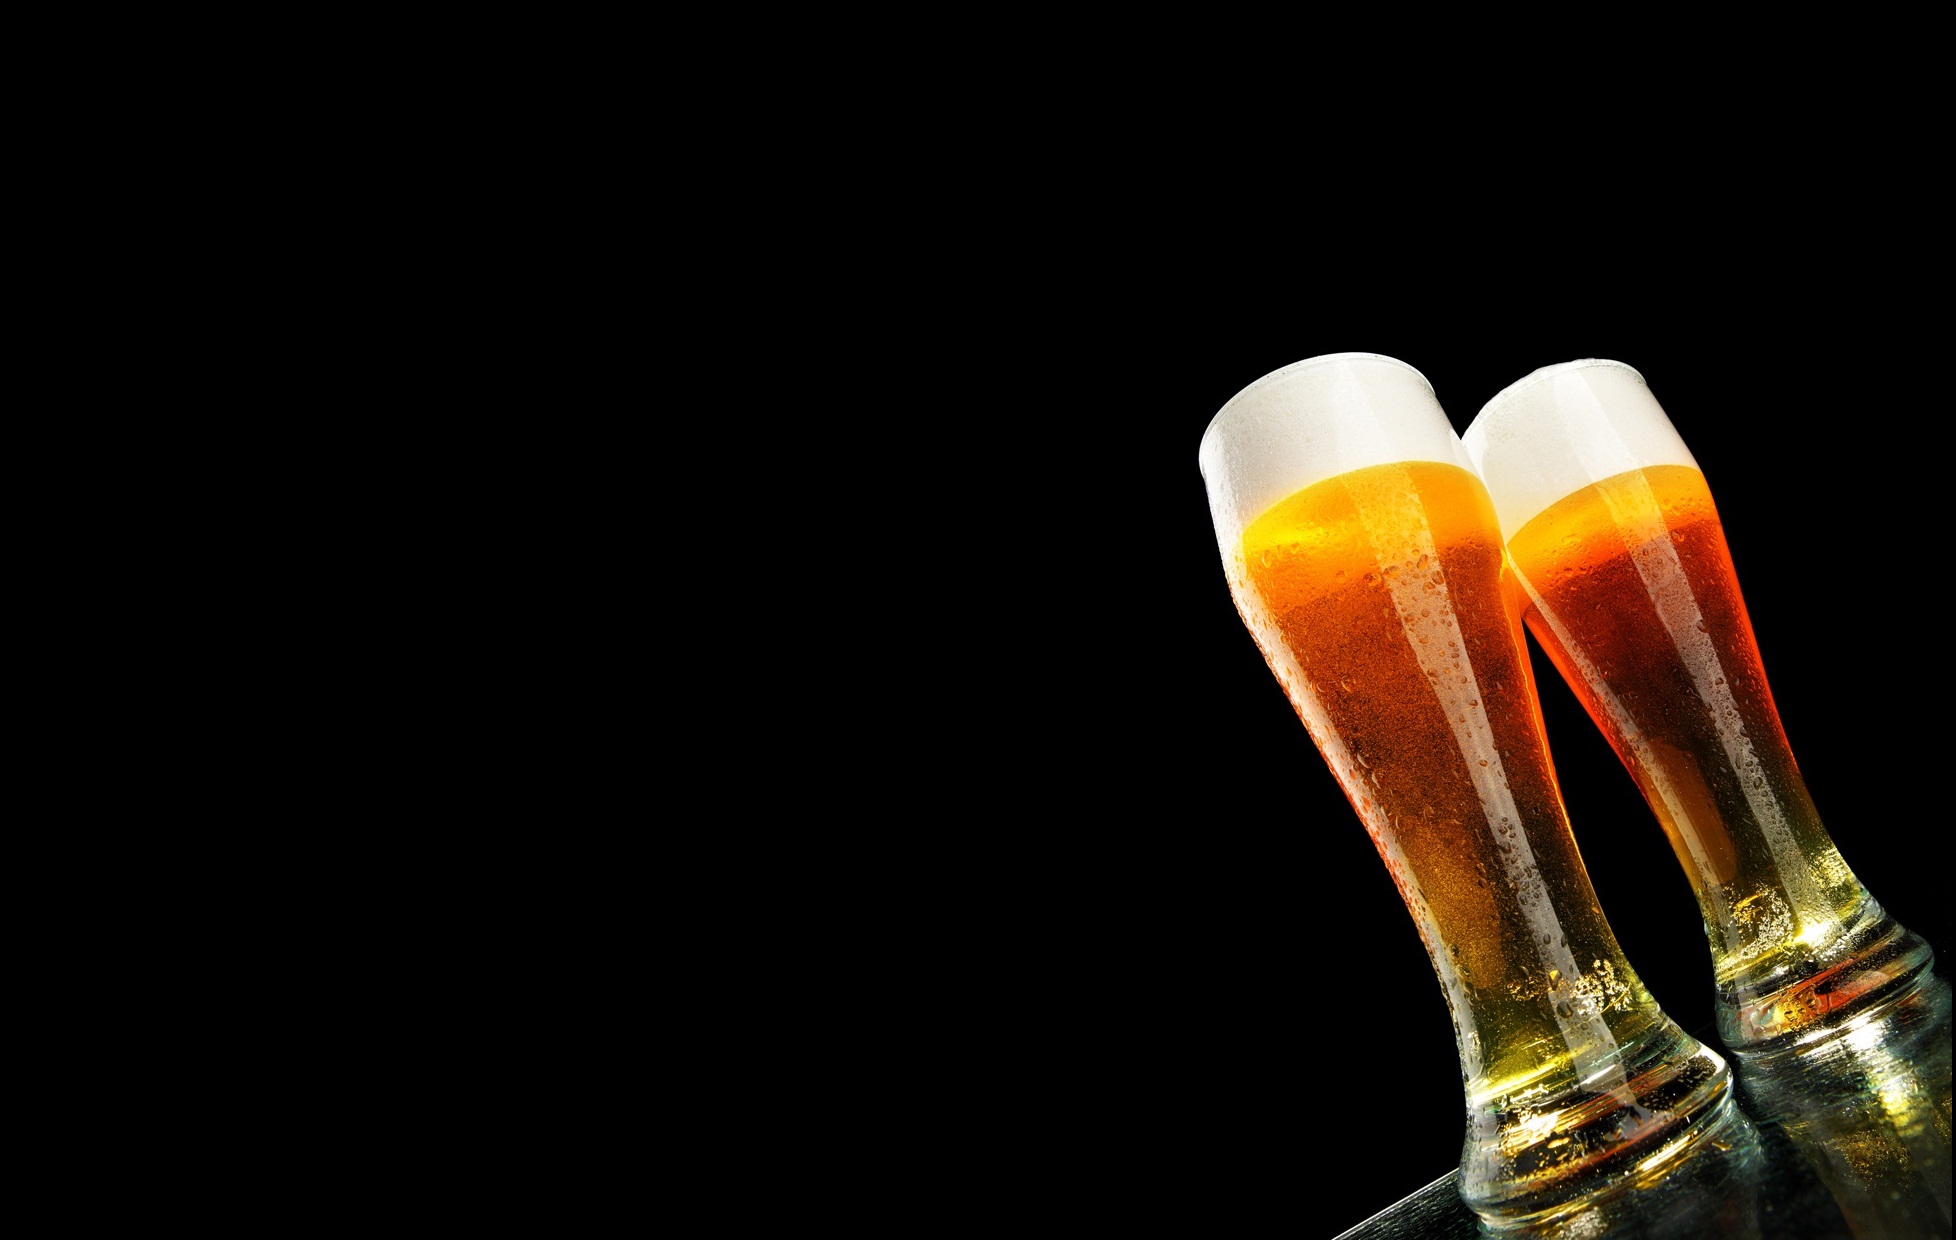 beer wallpaper,beer glass,beer,drink,alcoholic beverage,wheat beer